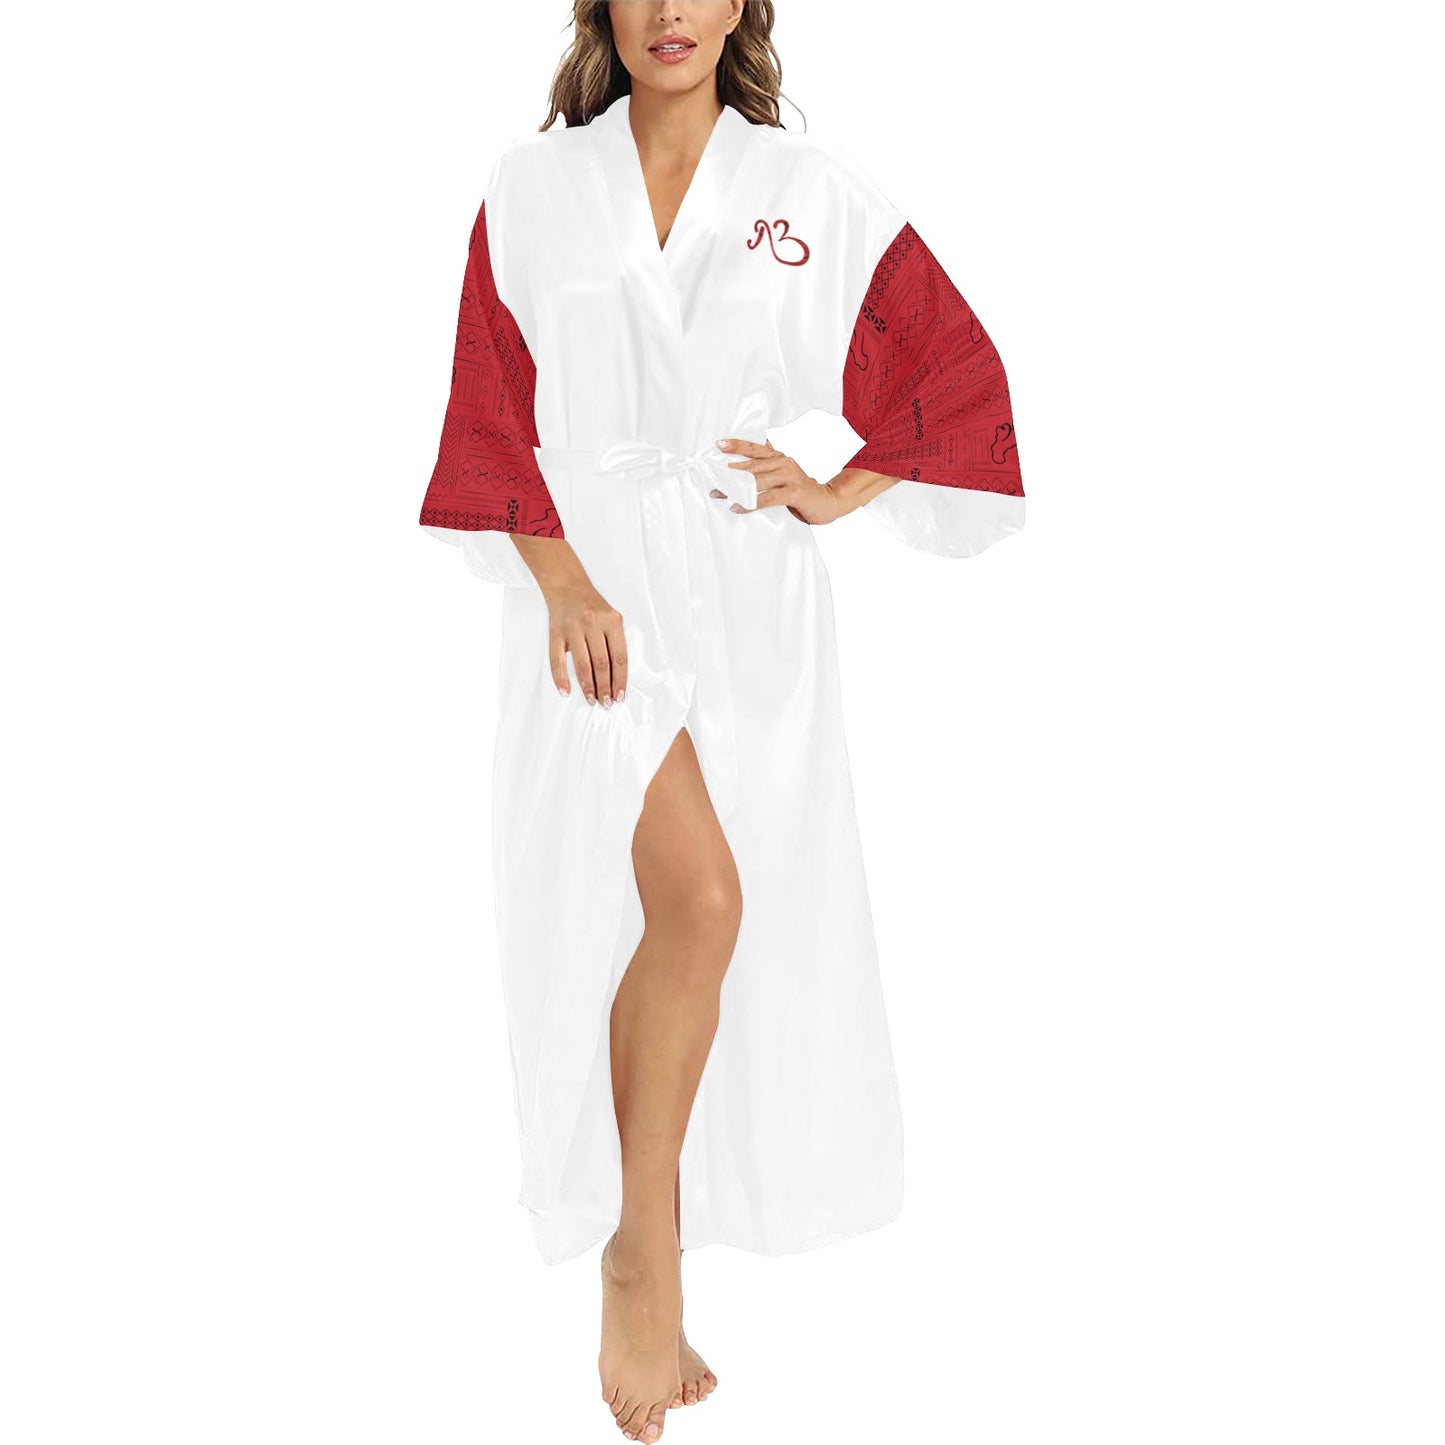 AfriBix Warrior Queen Long Kimono Cover up Women's Robe